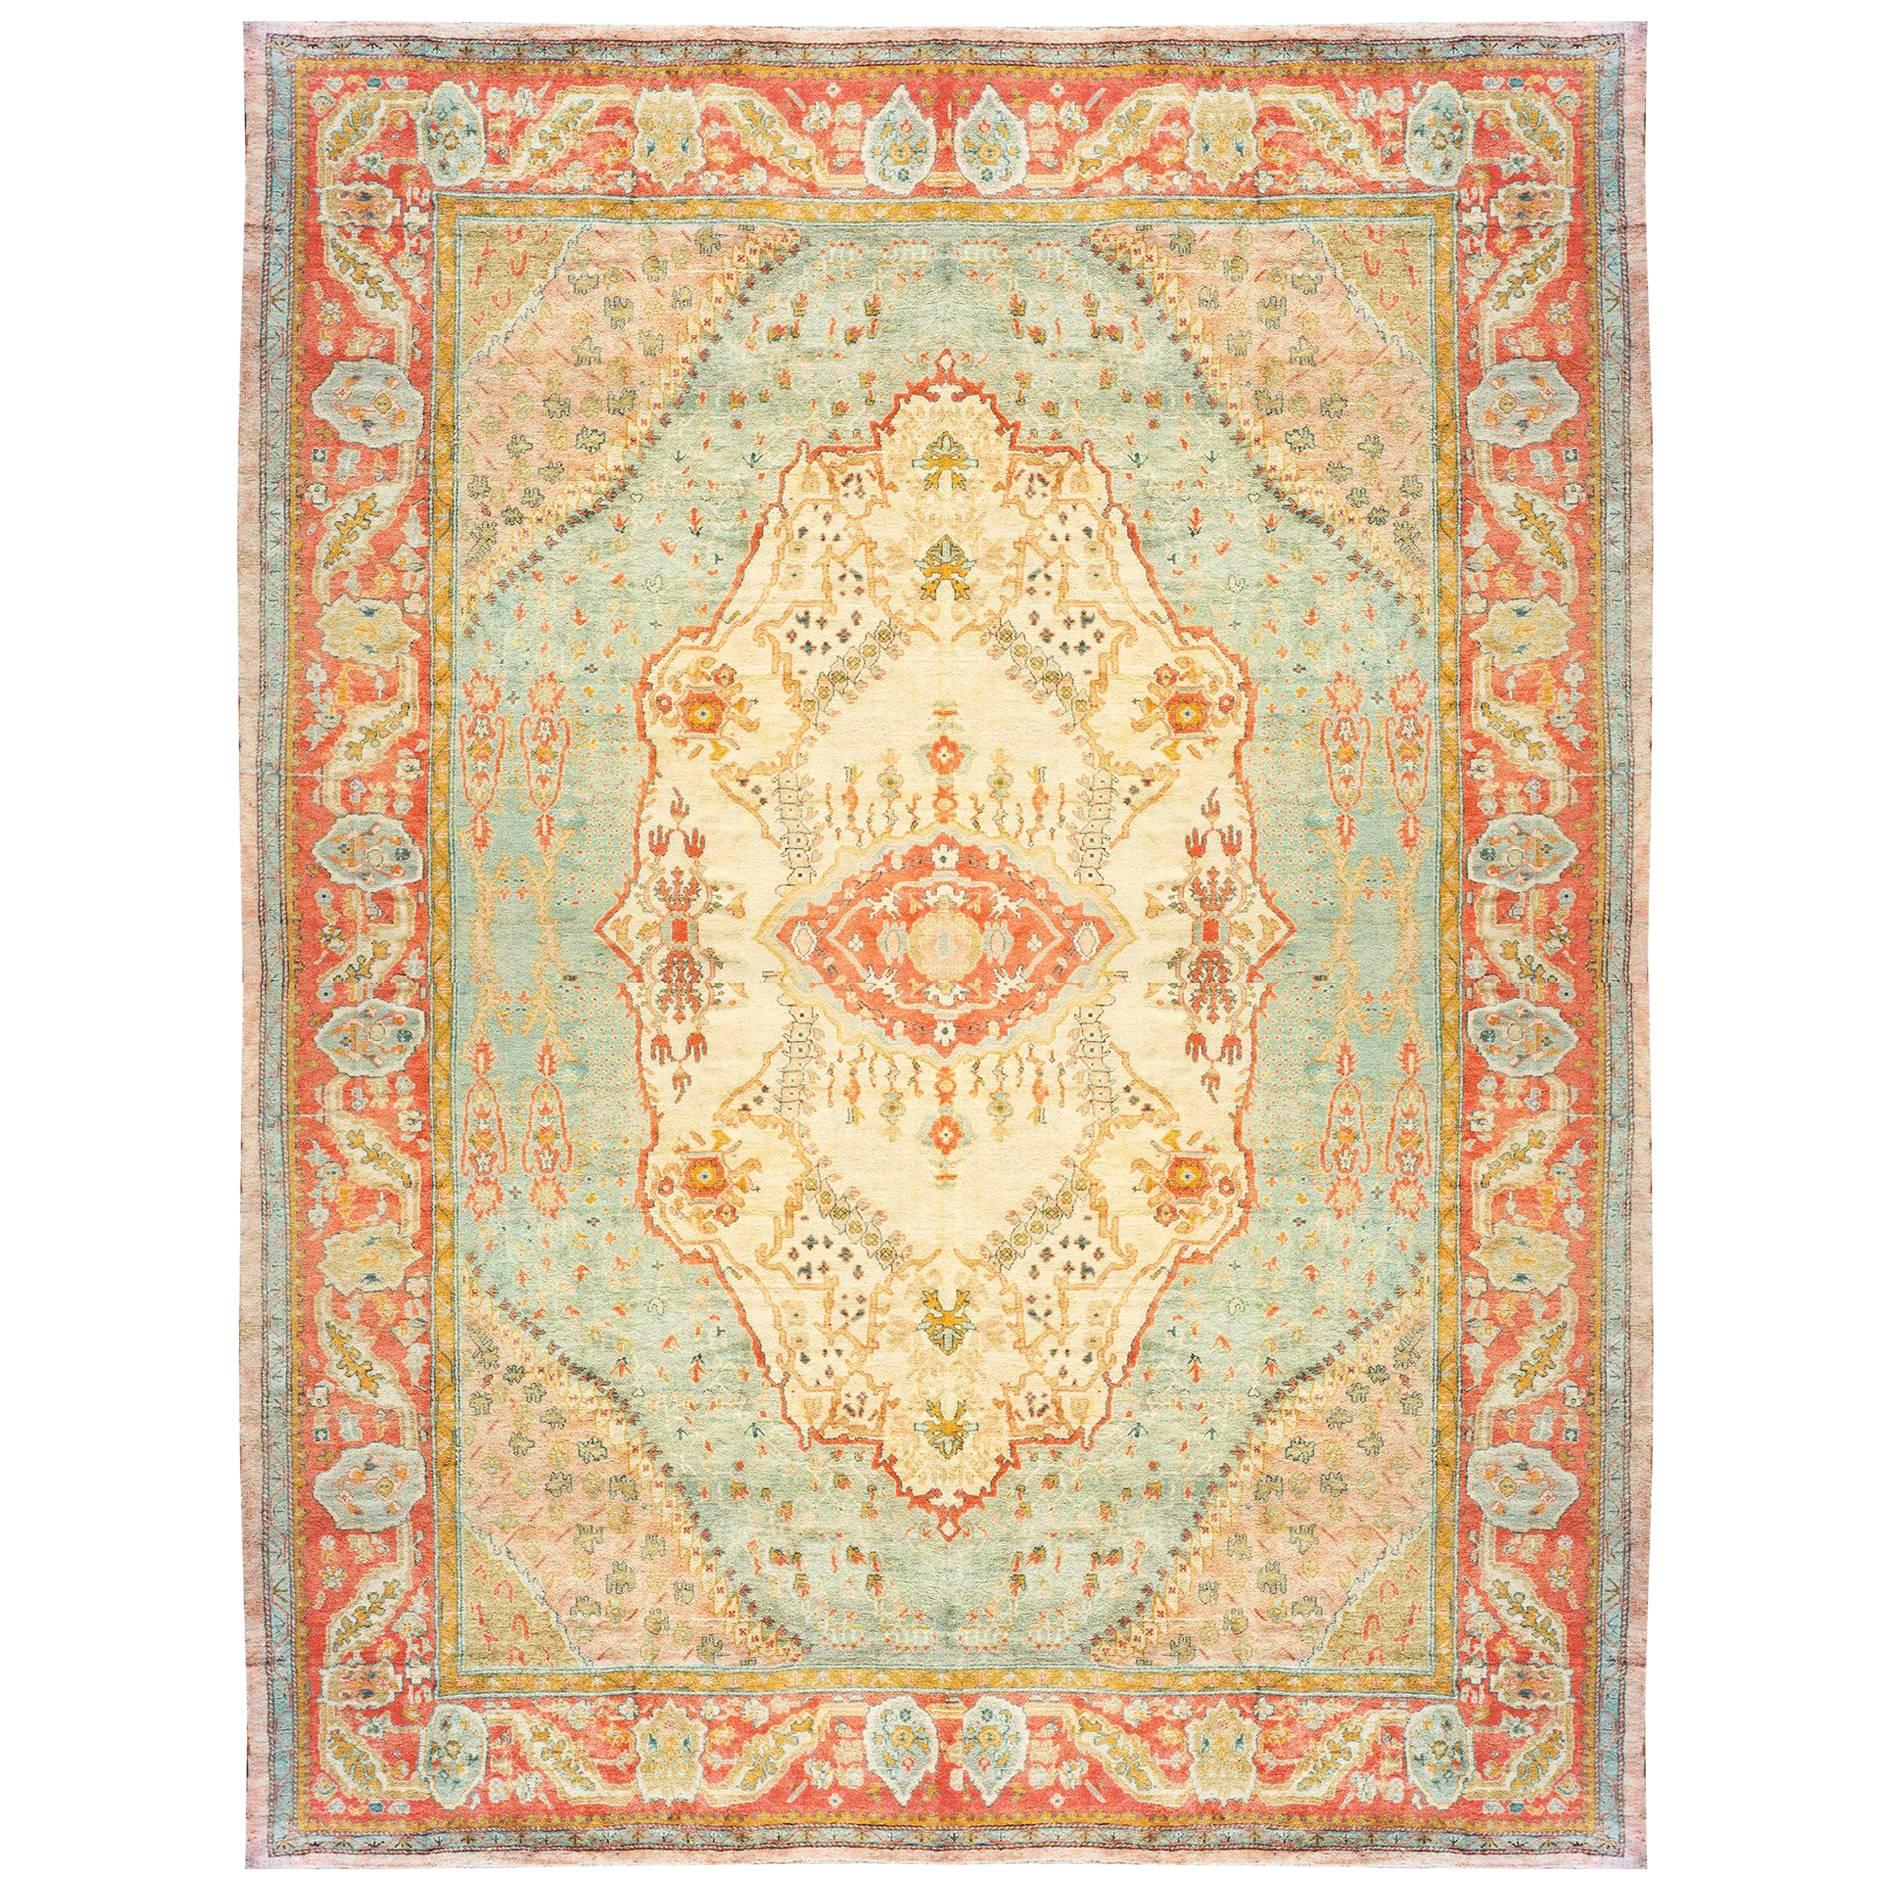 Antique Turkish Oushak Oriental Carpet, Mansion Size, w/ Medallion & Soft Colors